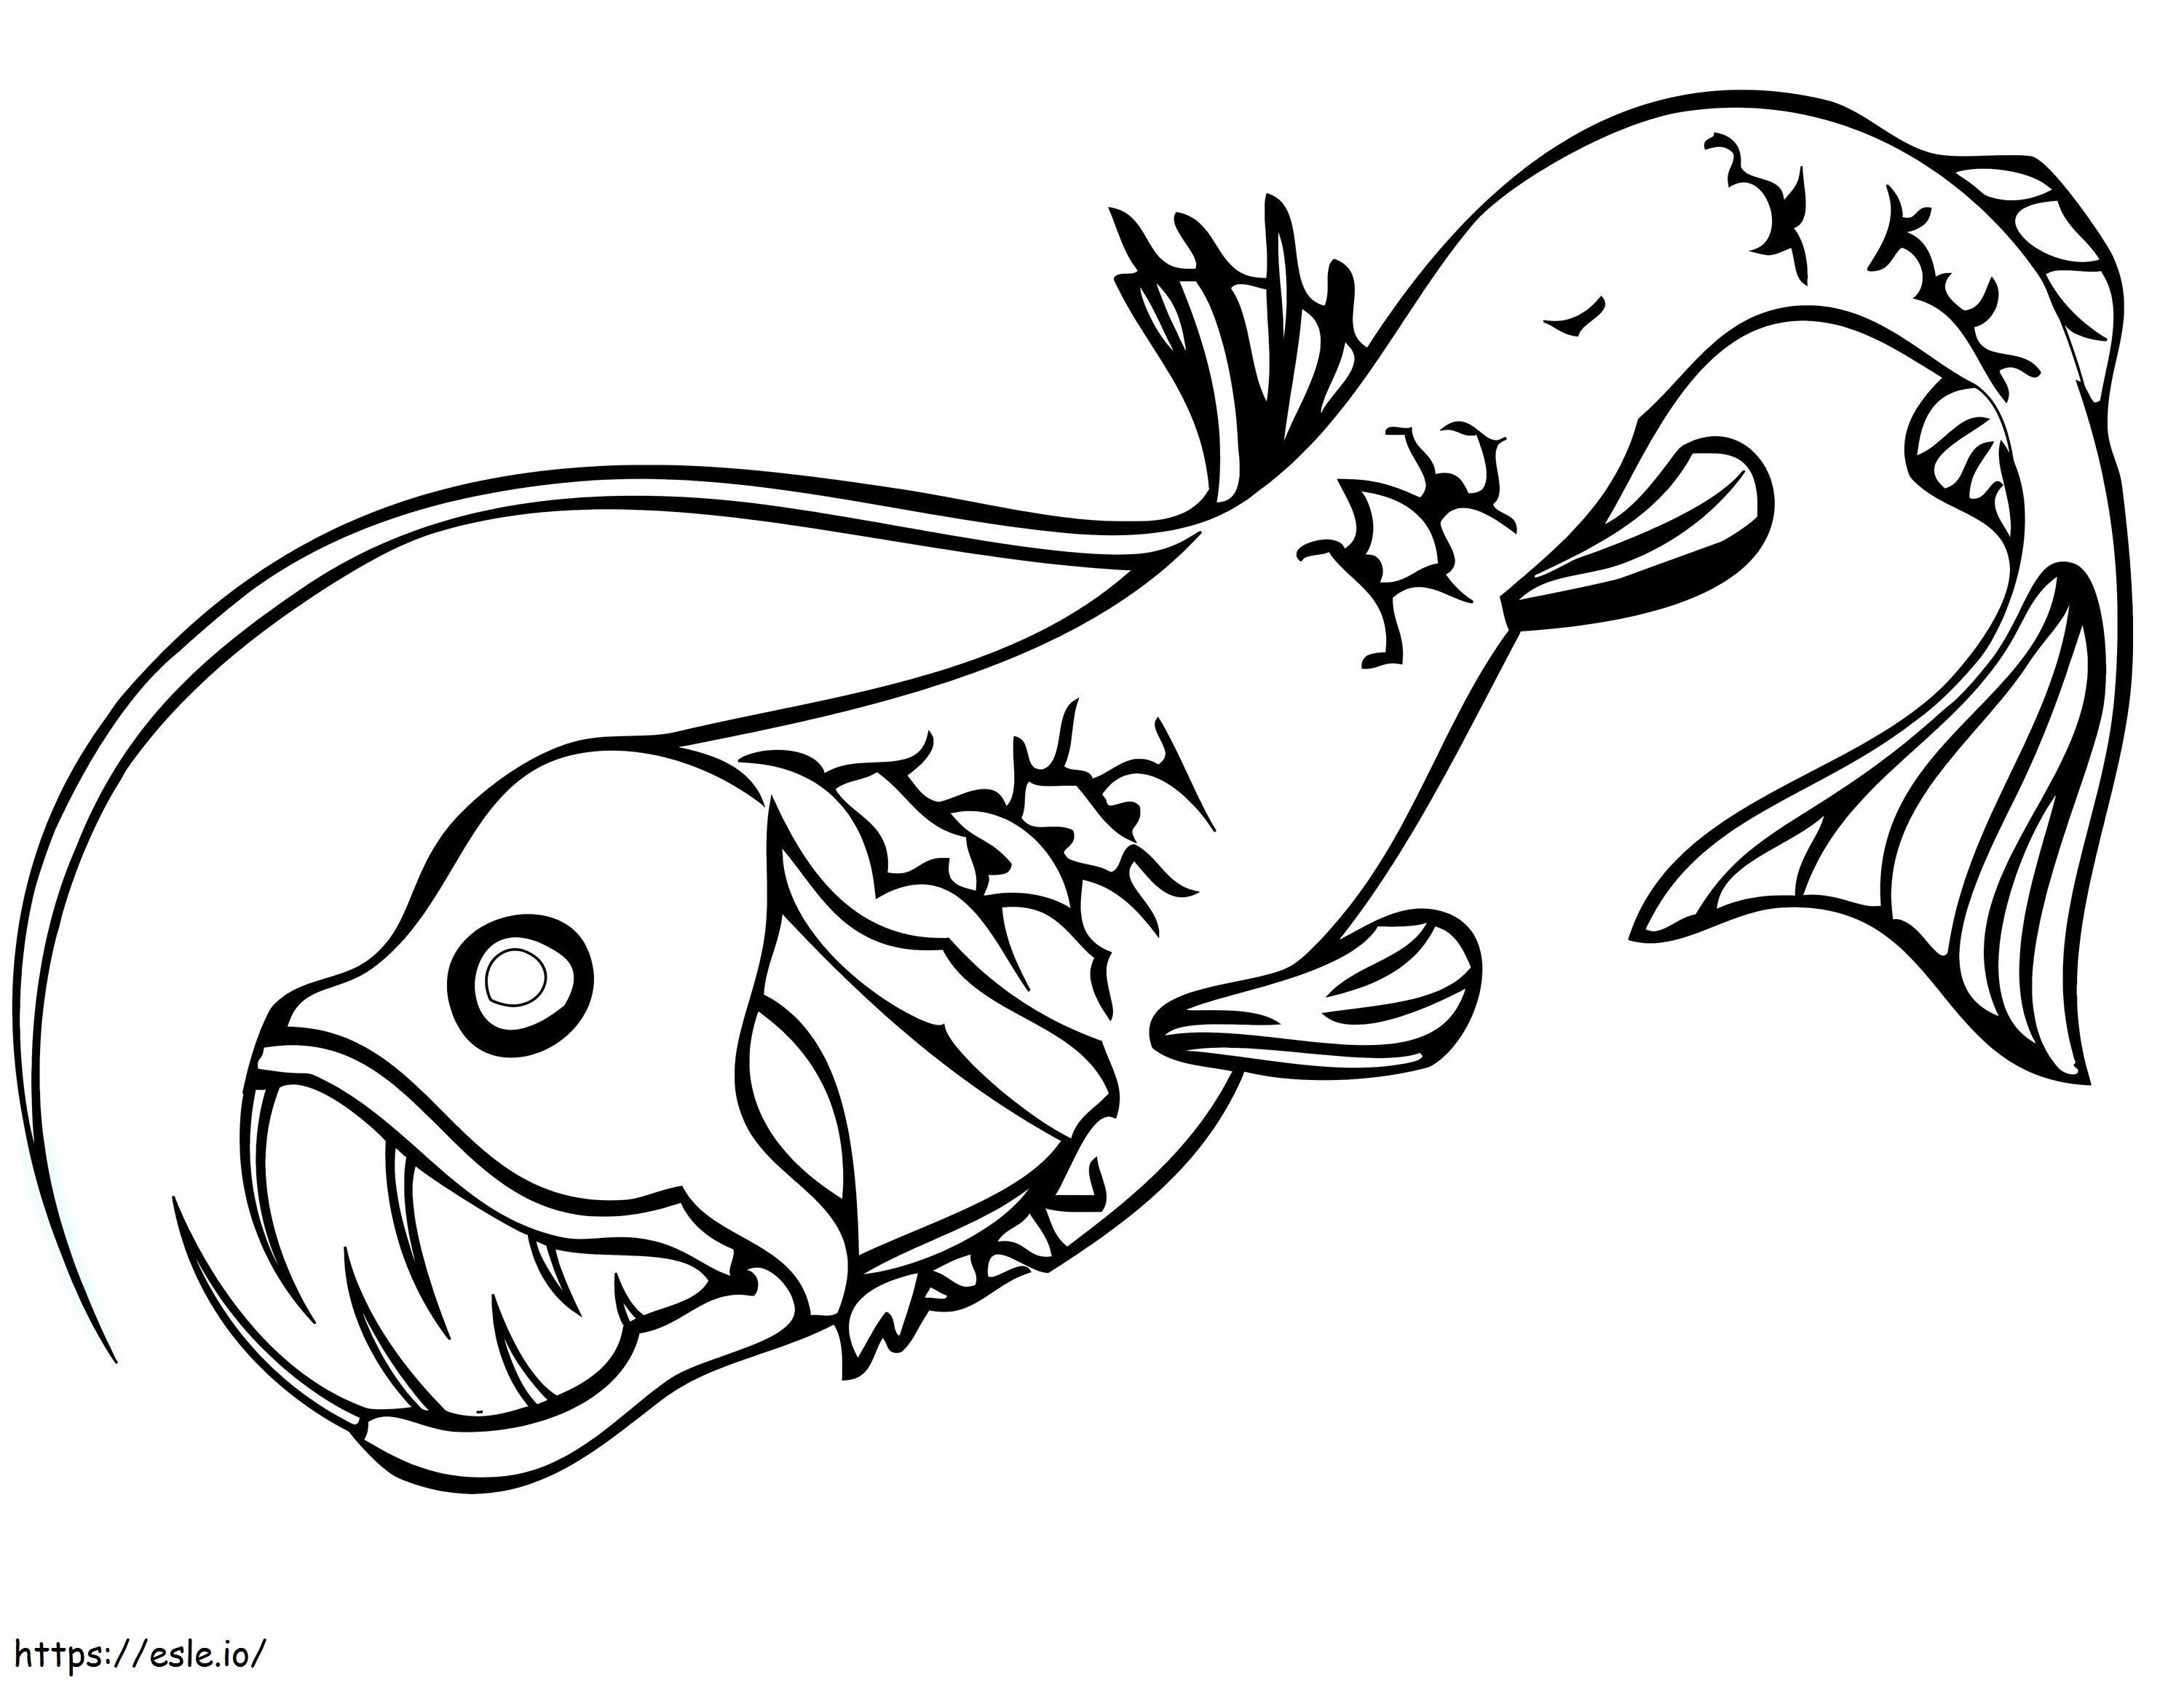 Ein Viperfisch ausmalbilder